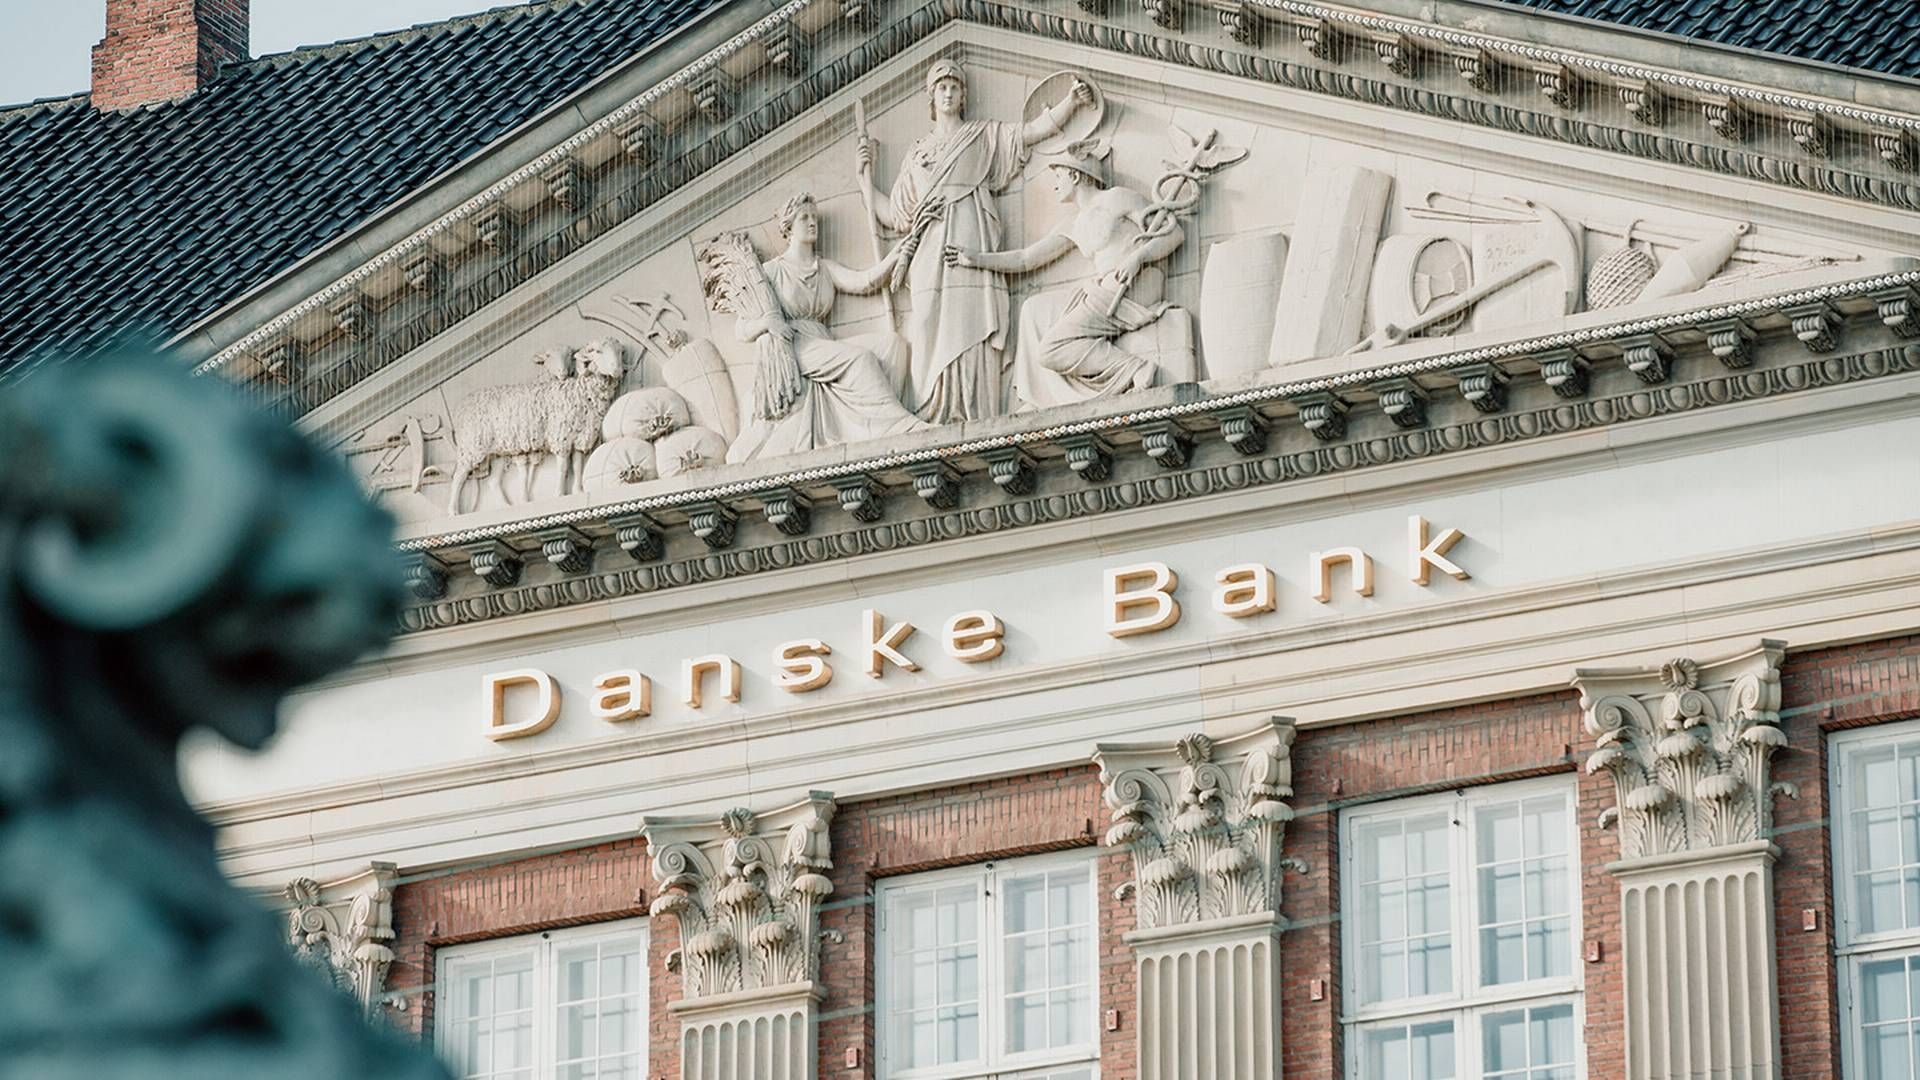 Foto: Pr / Danske Bank